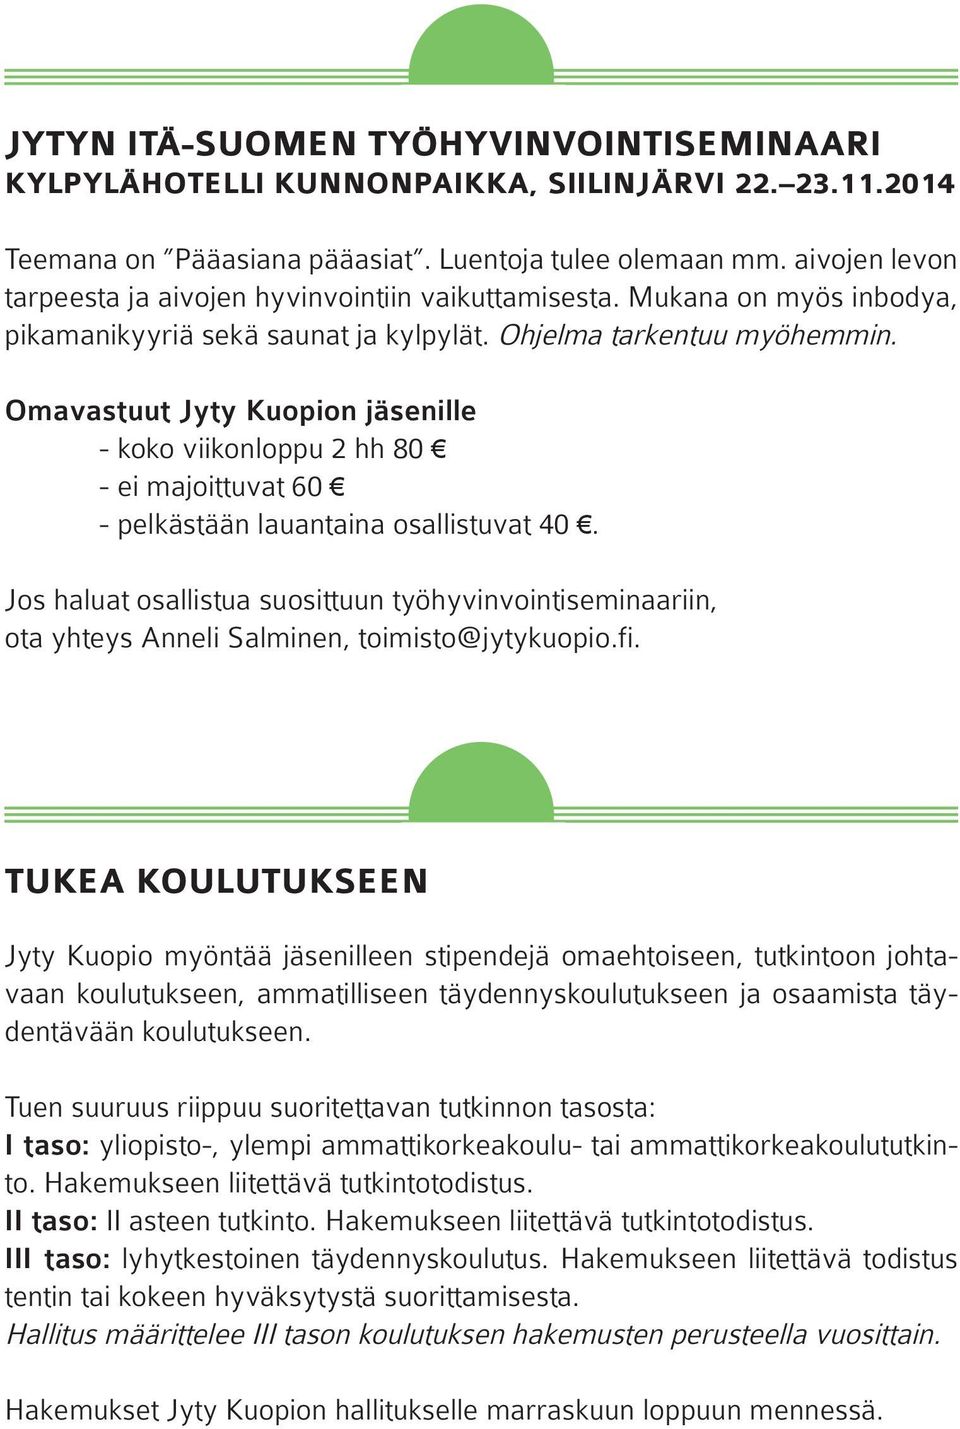 Omavastuut Jyty Kuopion jäsenille - koko viikonloppu 2 hh 80 - ei majoittuvat 60 - pelkästään lauantaina osallistuvat 40.